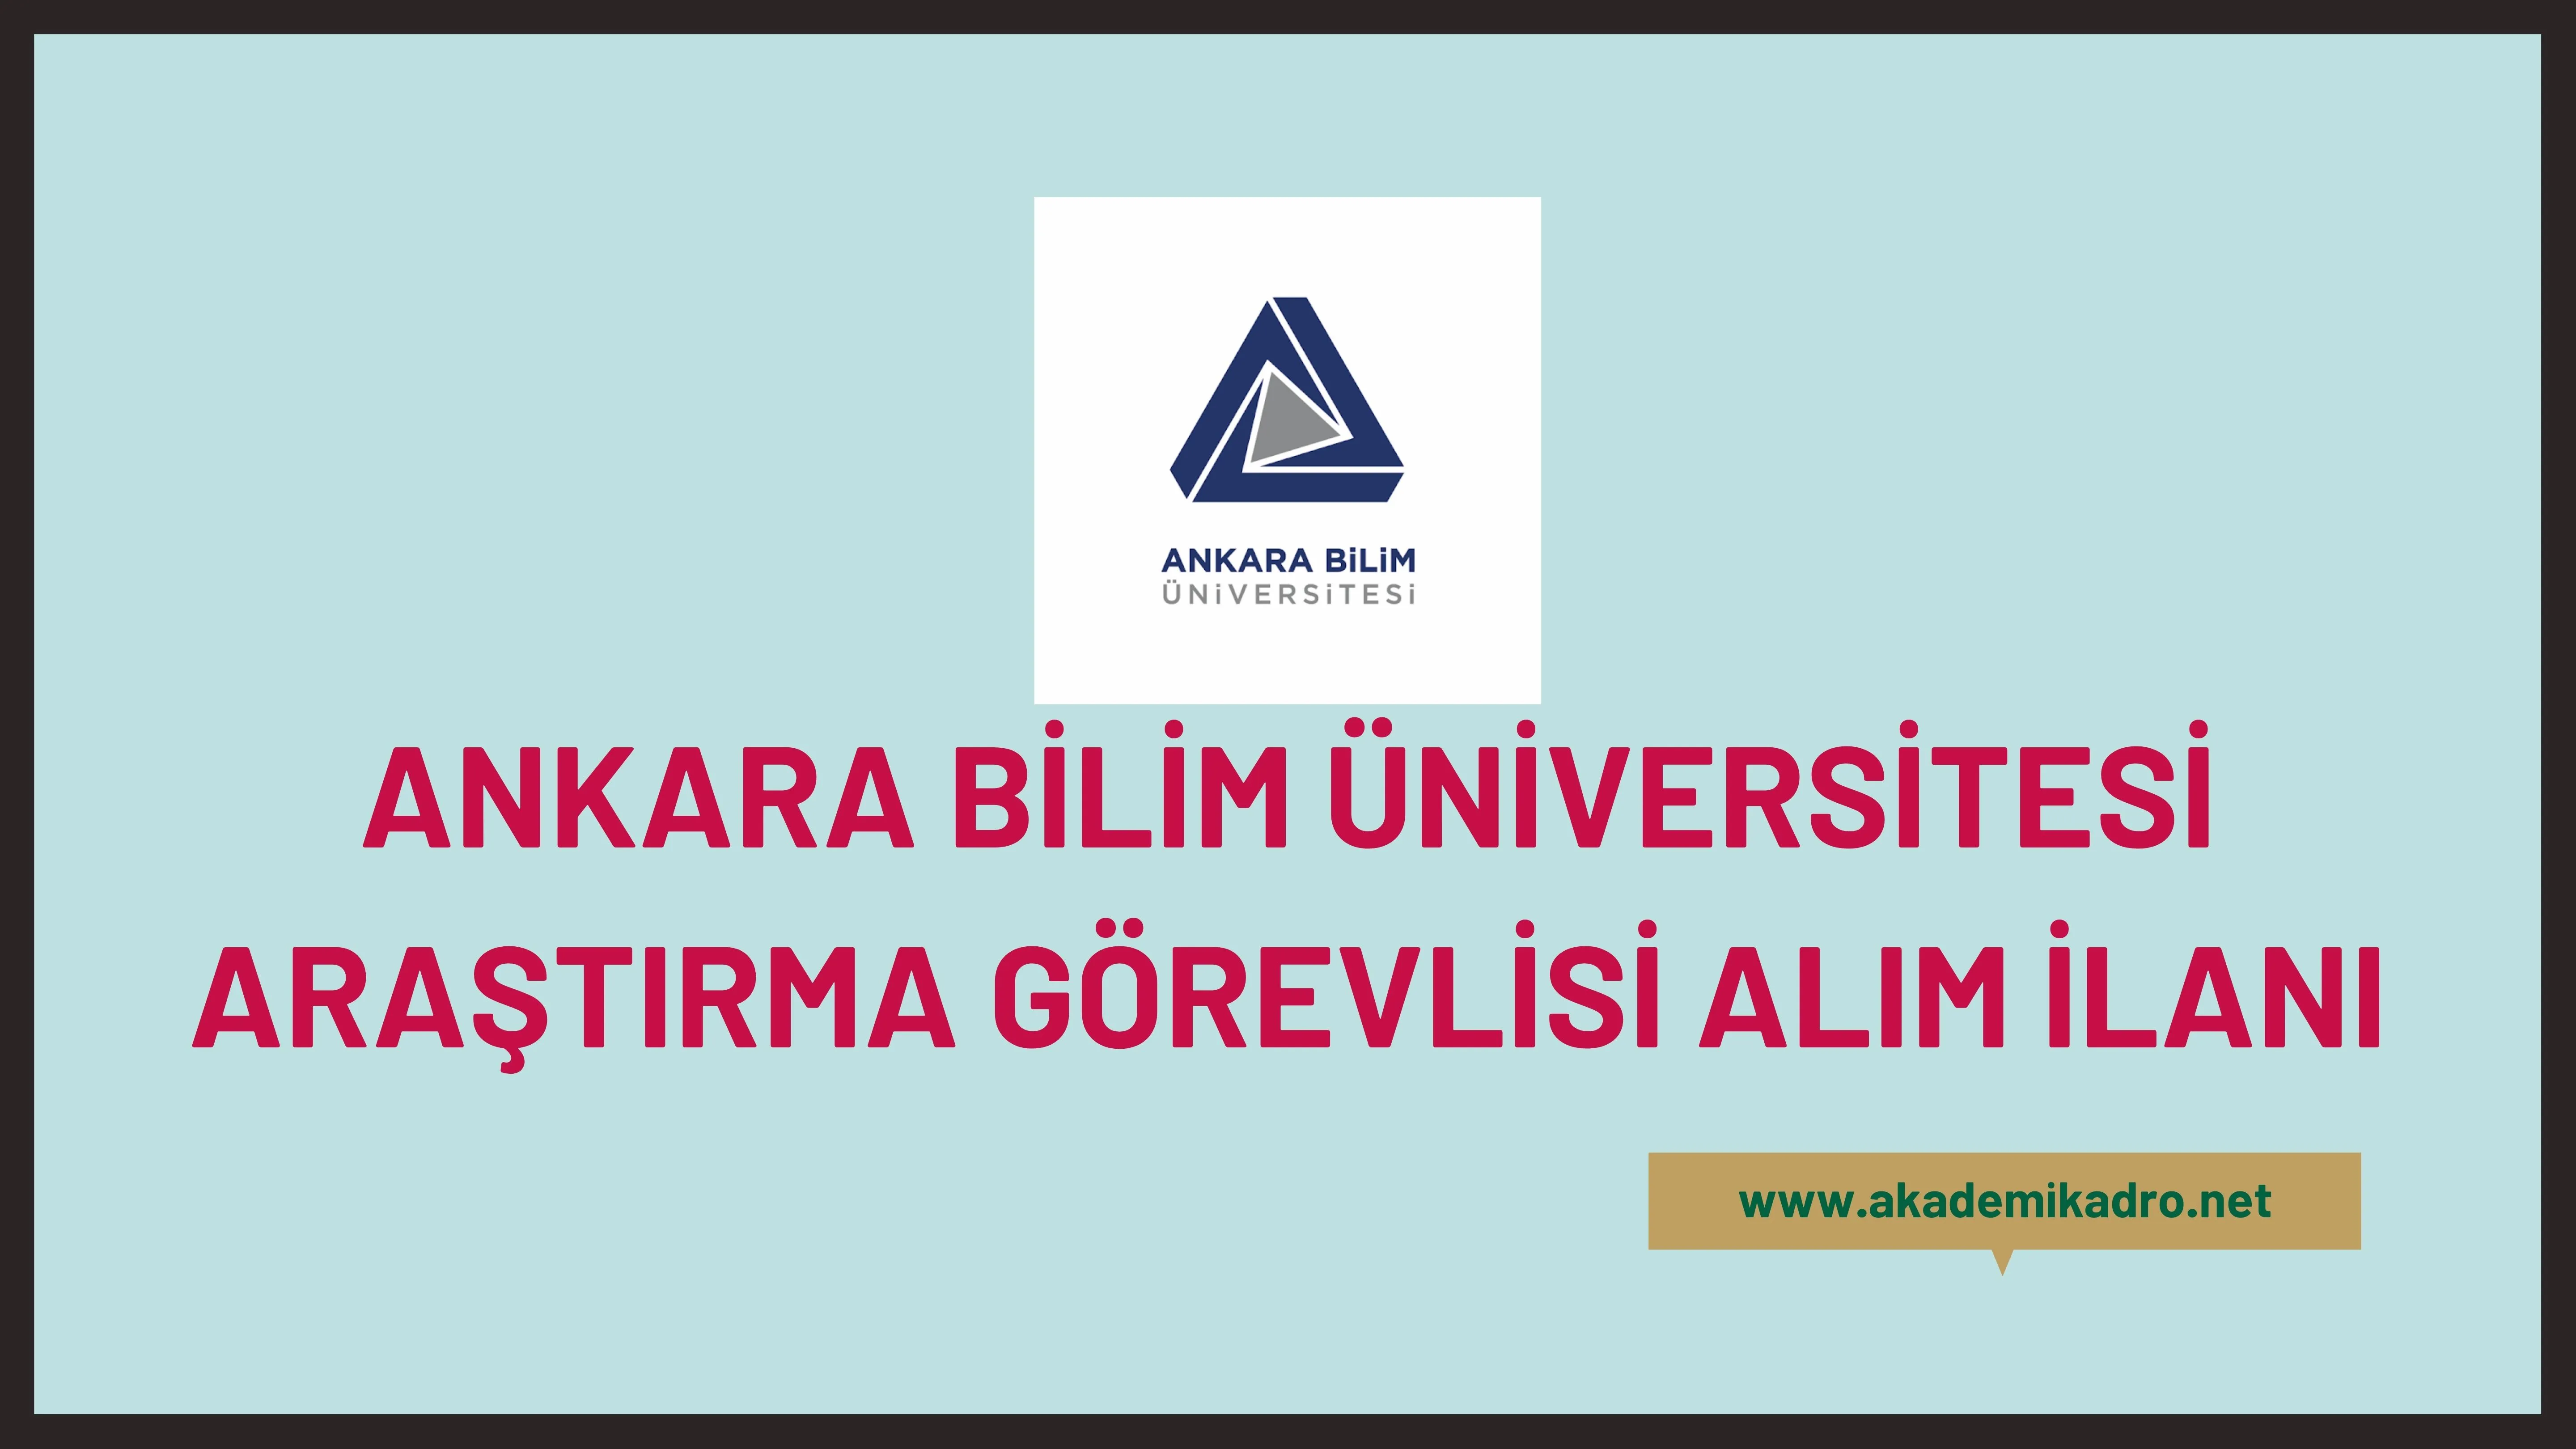 Ankara Bilim Üniversitesi Araştırma Görevlisi alacak. Son başvuru tarihi 31 Ekim 2022.